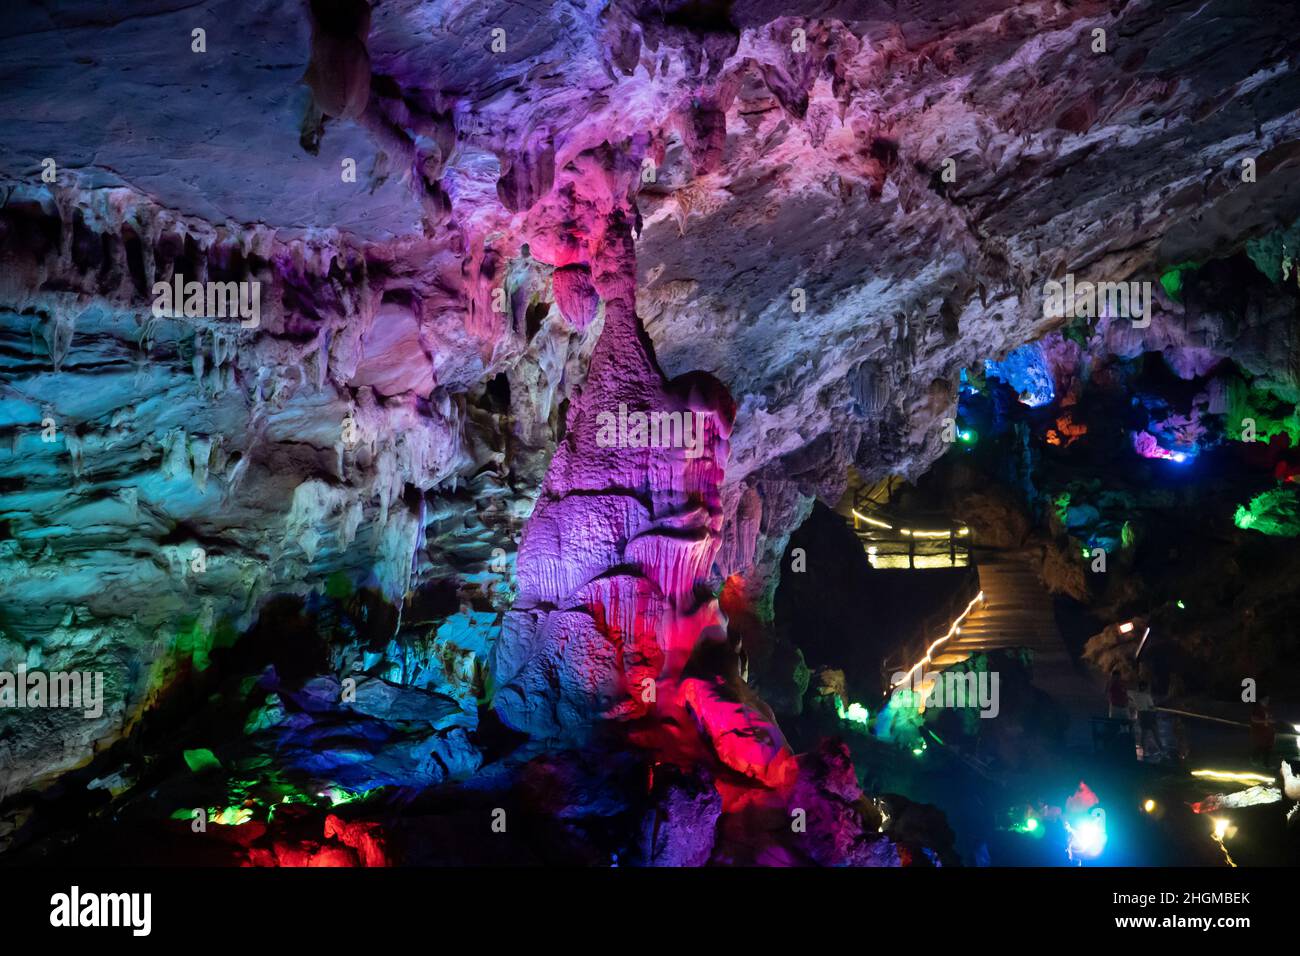 Grotte karstique souterraine illuminée par une lumière colorée Banque D'Images